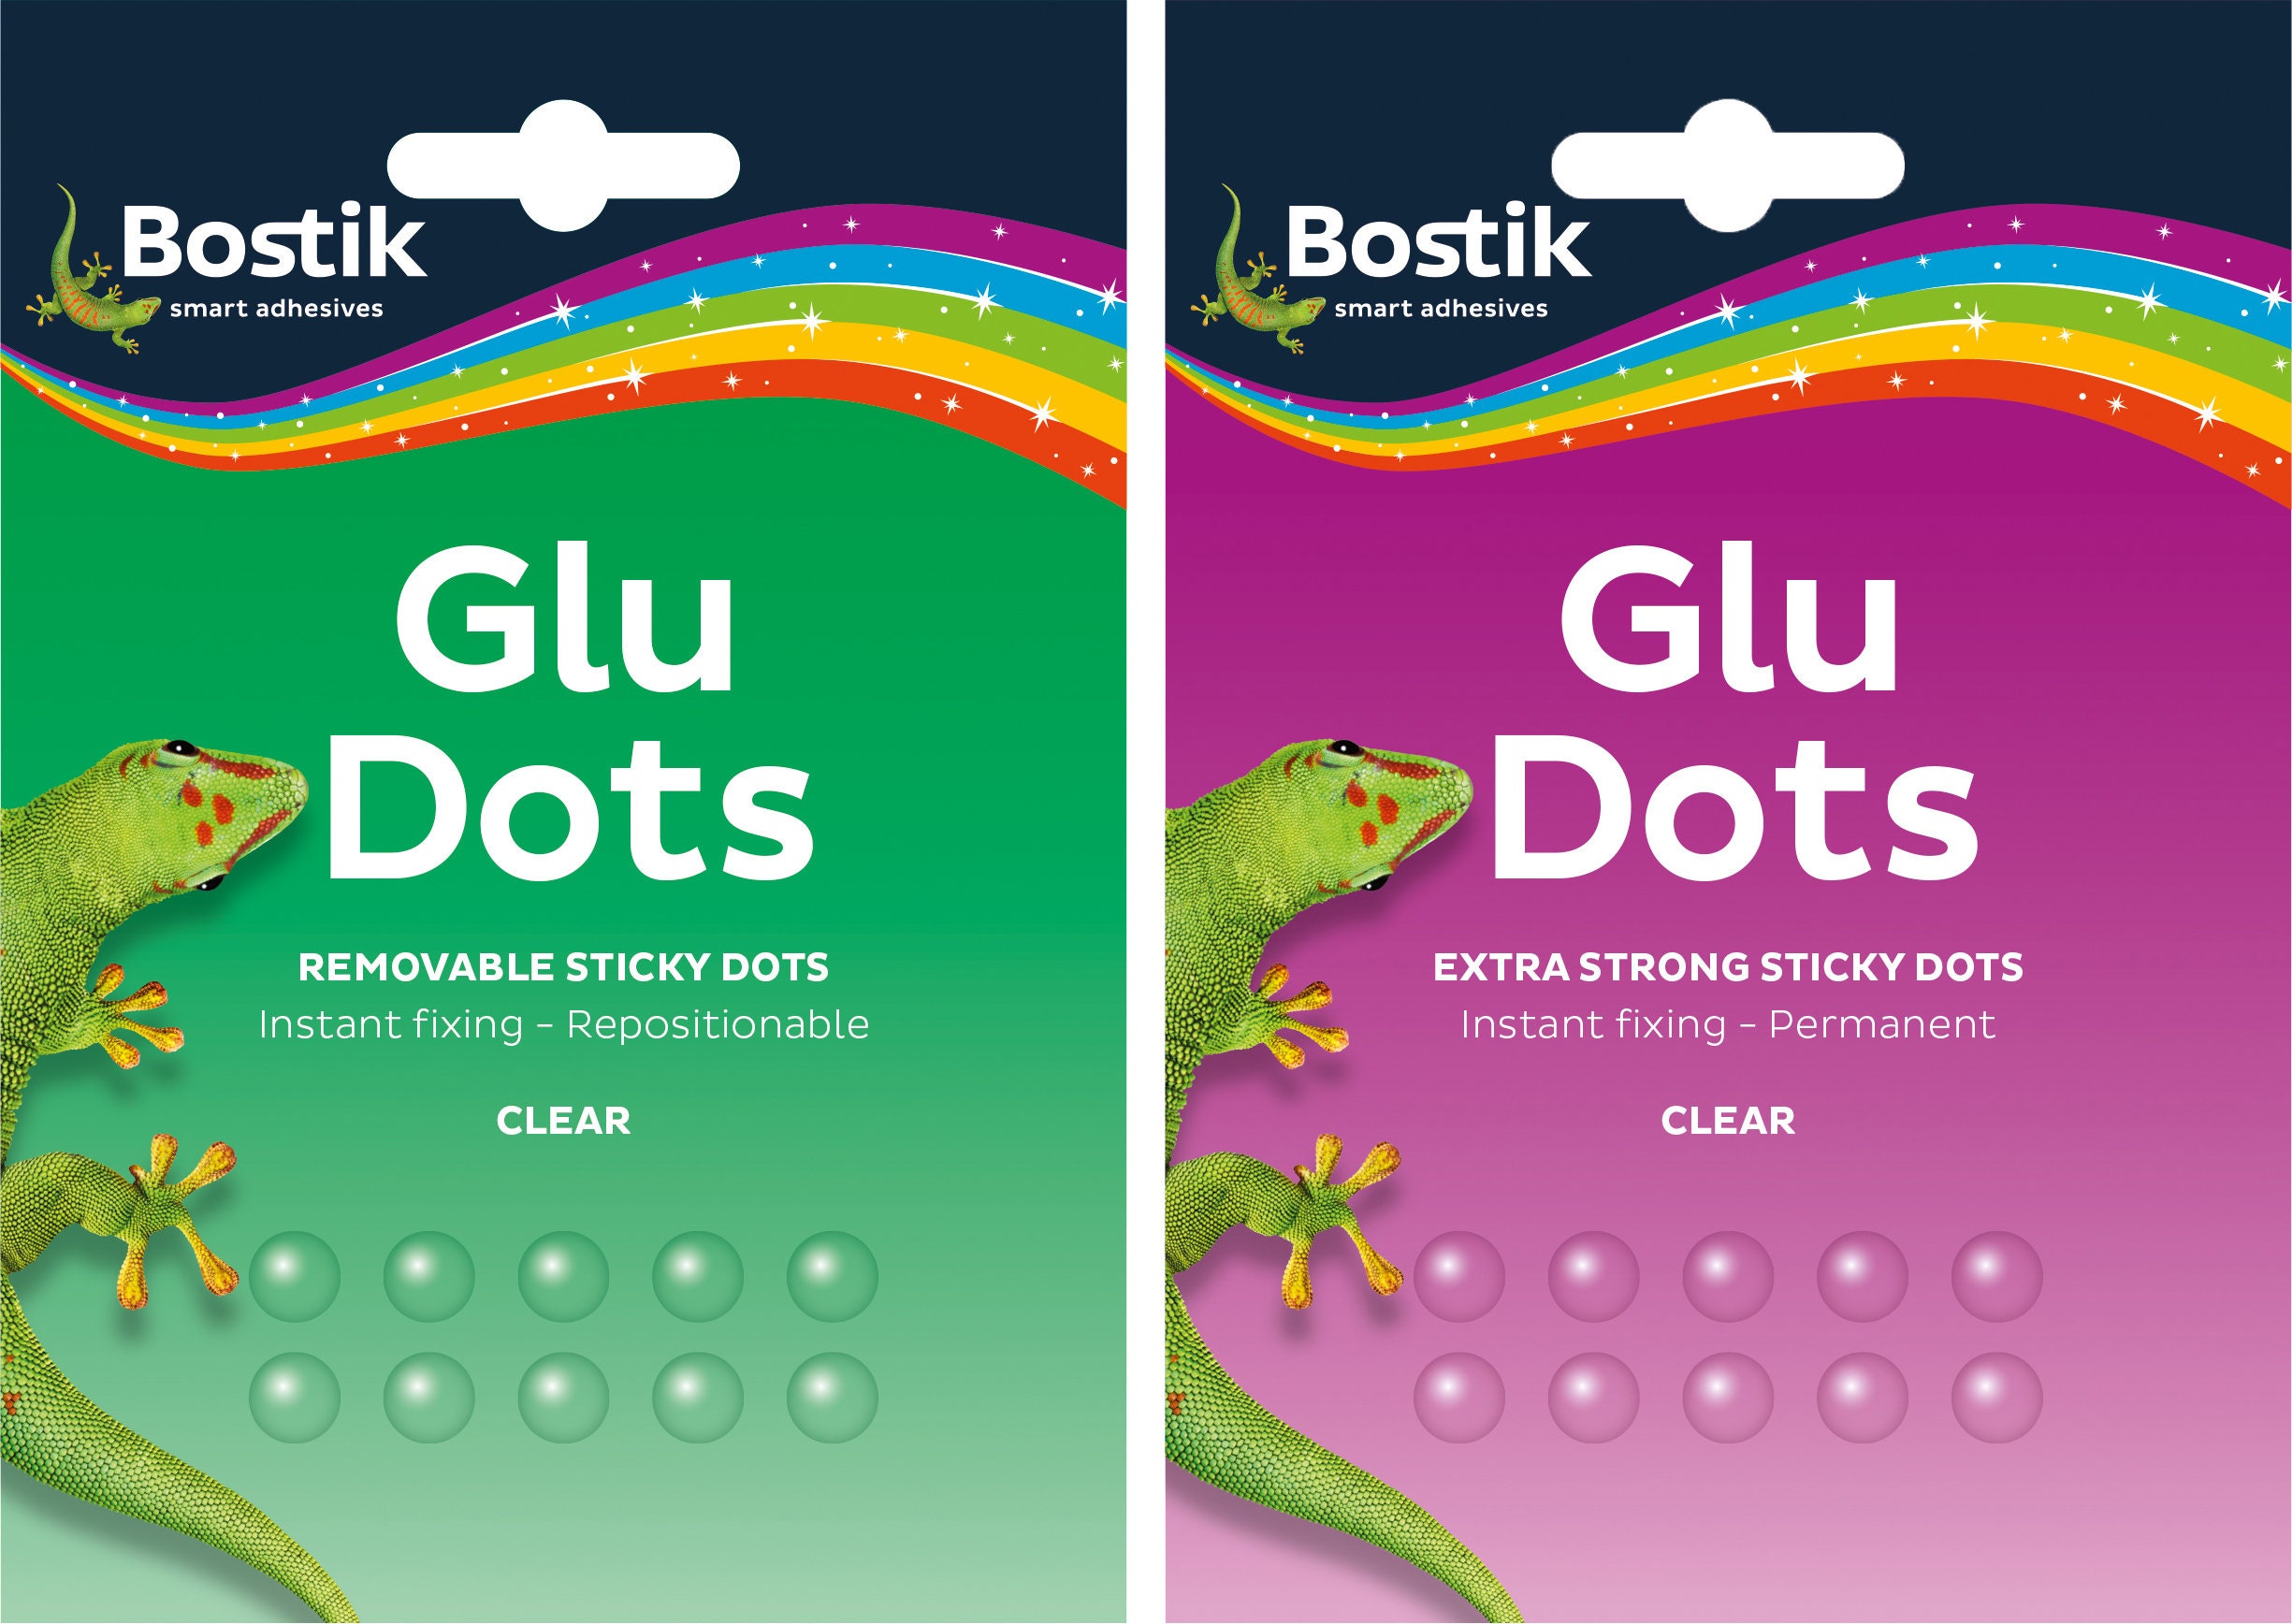 Bostik Glu Dots Removable 64 dots - The Deckle Edge